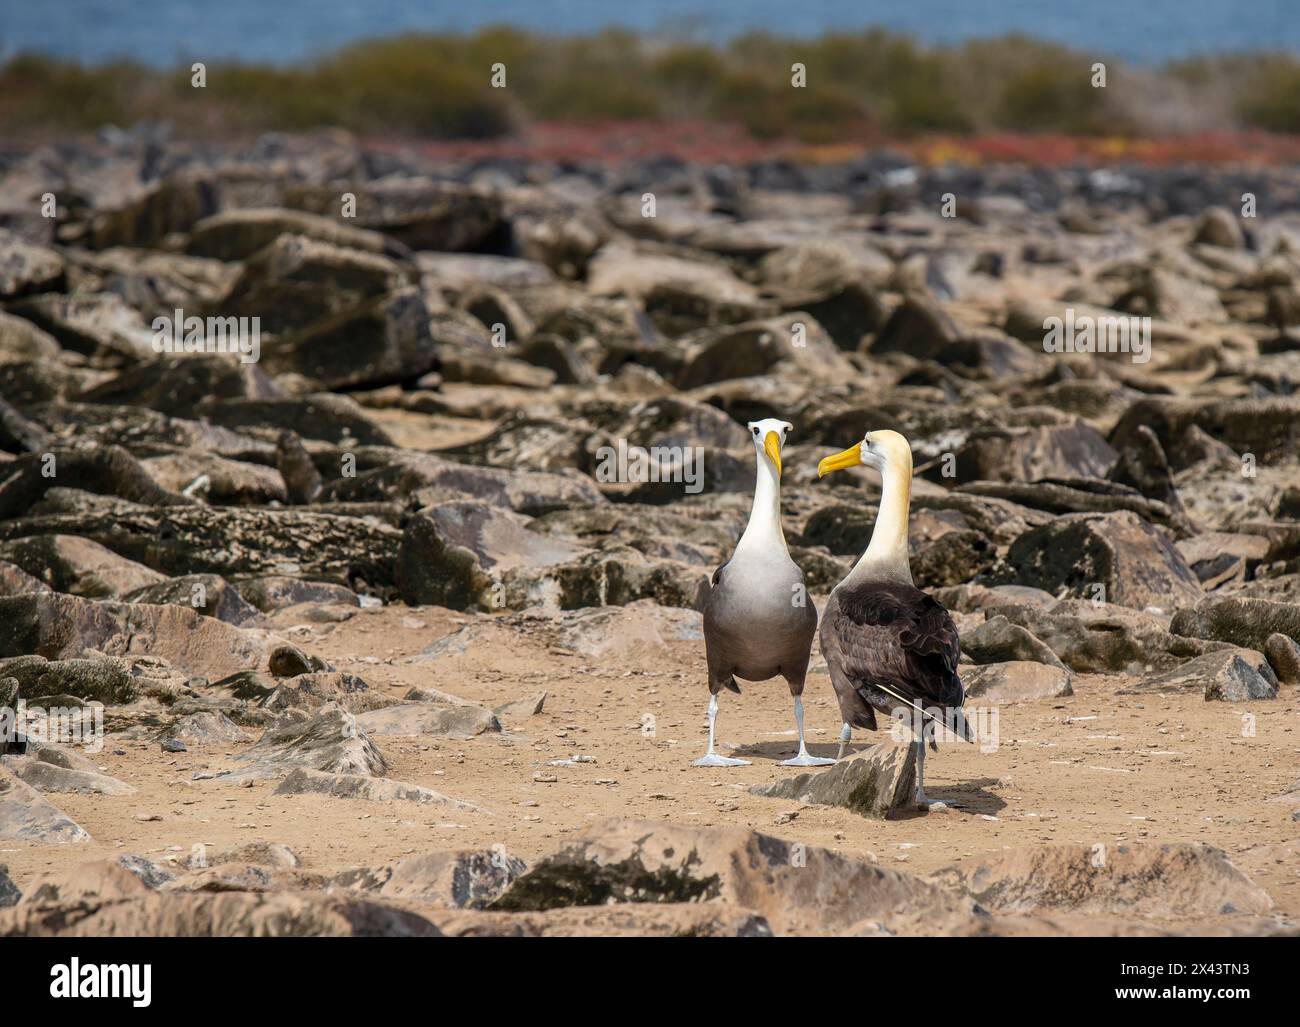 Le Galapagos hanno fatto oscillare la coppia di Albatross (Phoebastria irorata) durante la danza di accoppiamento, l'isola Espanola, il parco nazionale delle Galapagos, Ecuador. Foto Stock